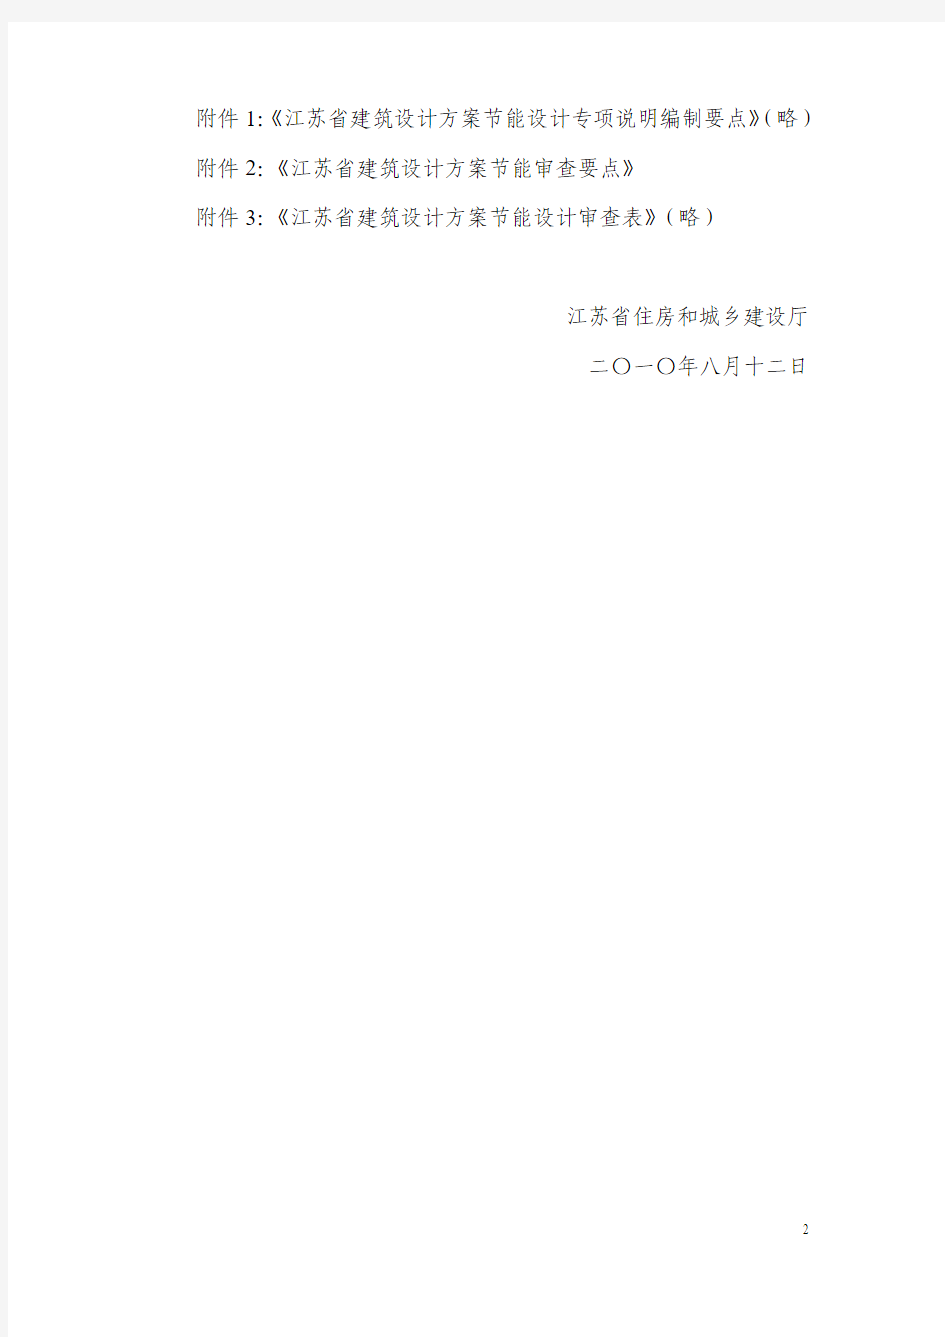 江苏省关于加强建筑设计方案节能审查工作的通知(苏建函科[2010]649号)(完整版)